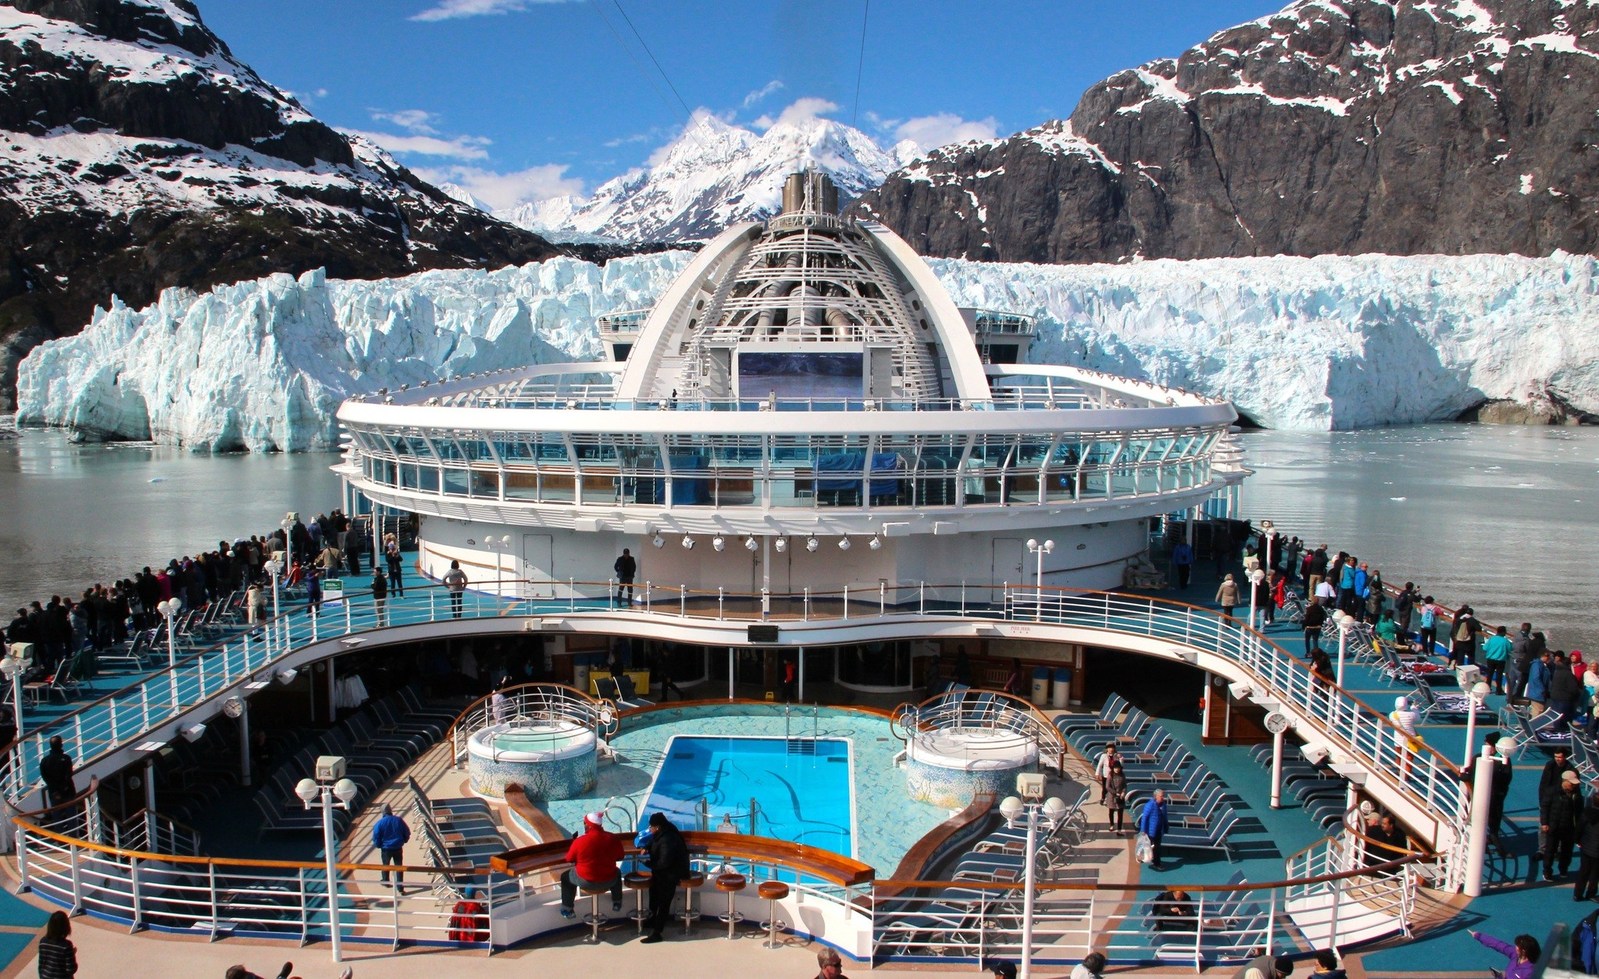 Αποτέλεσμα εικόνας για The world's top cruise destinations, according to consumer reviews on Cruise Critic